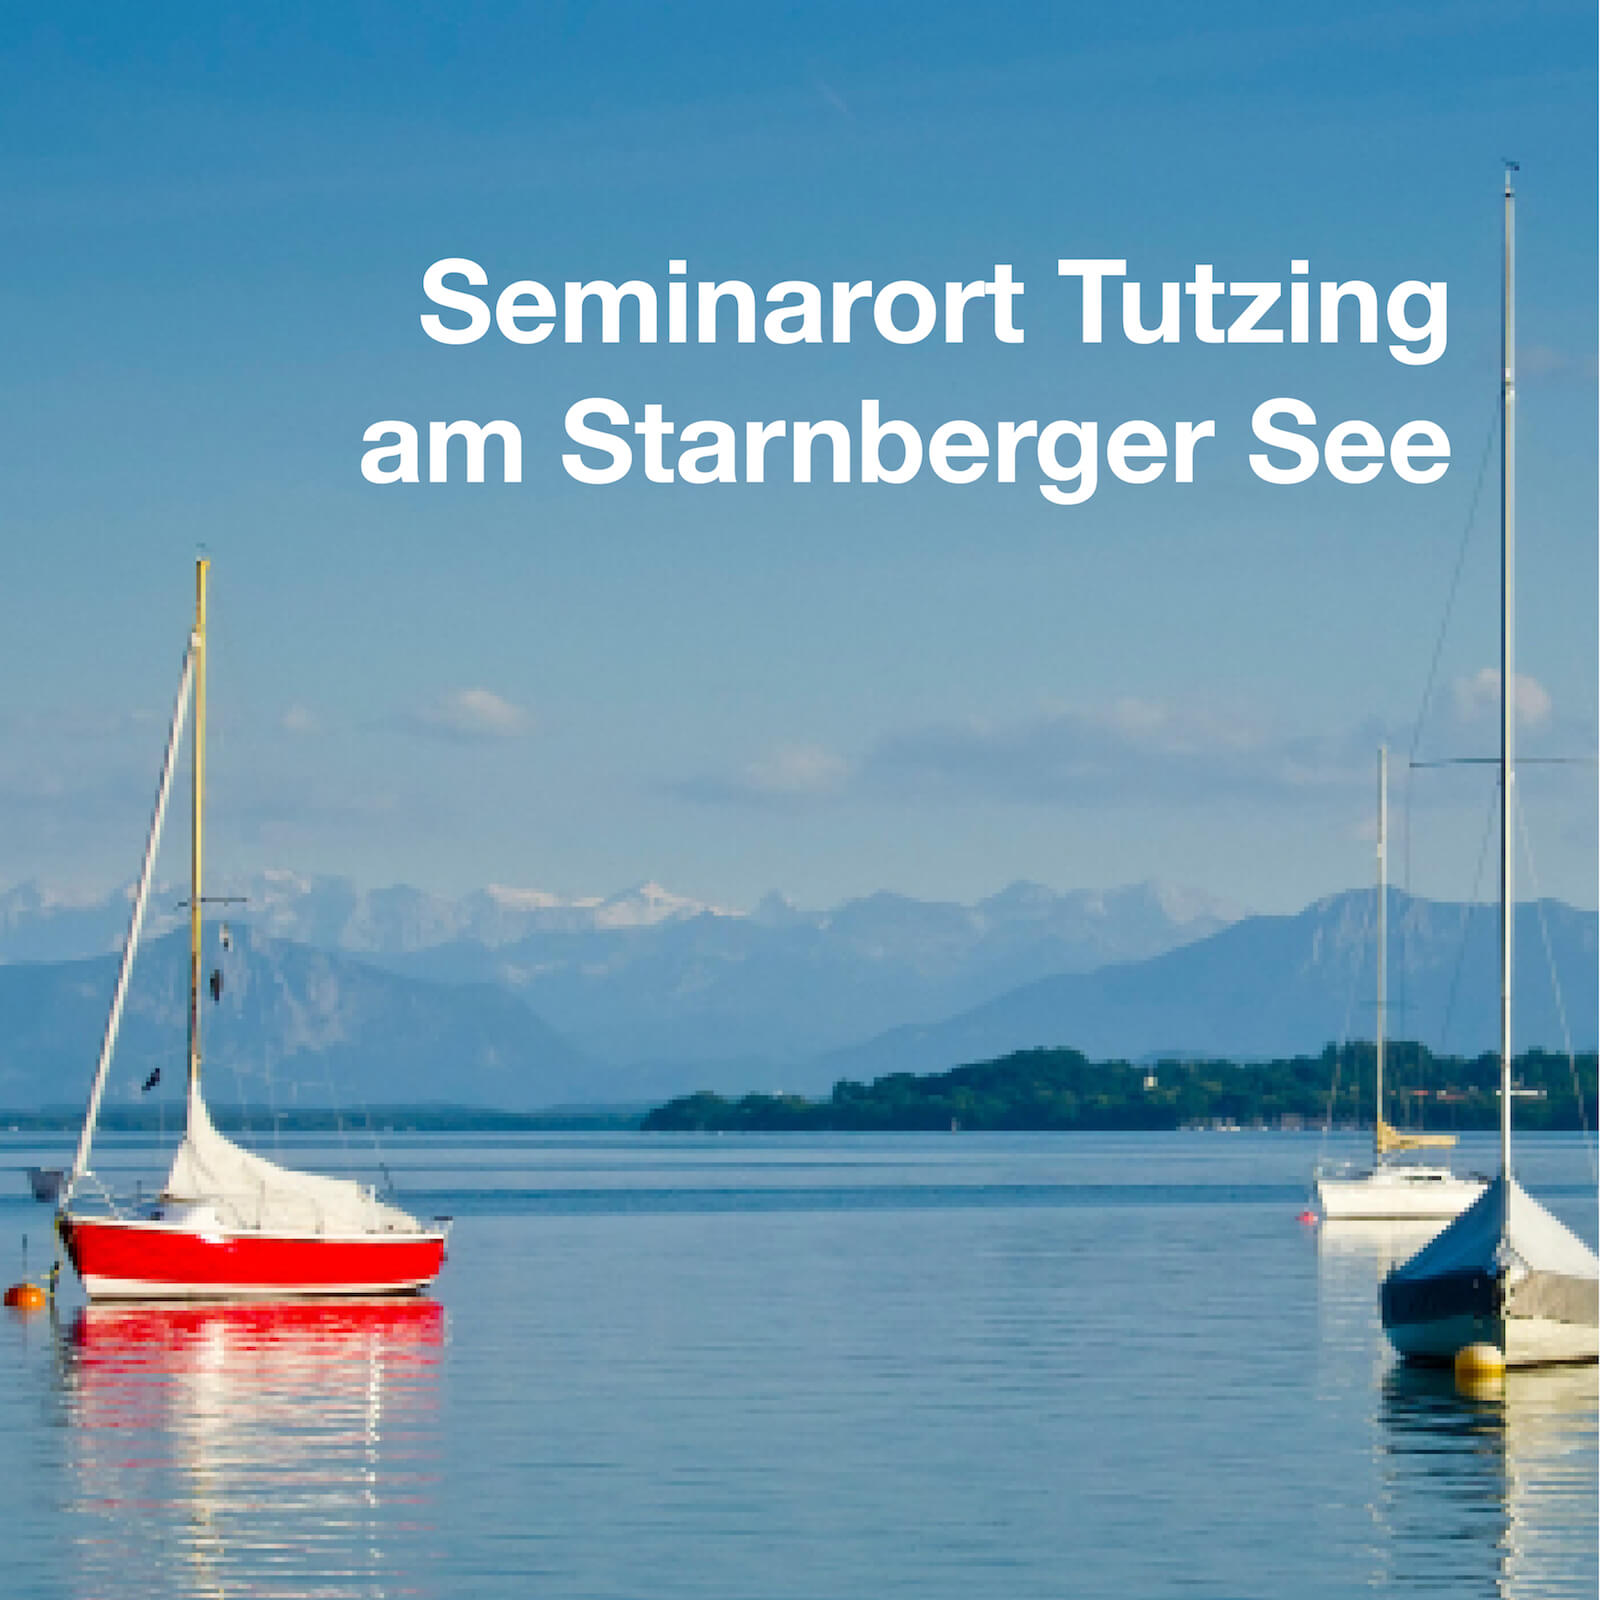 Semianrort Tutzing am Starnberger See. Läd ein zum Lernen und Verweilen.